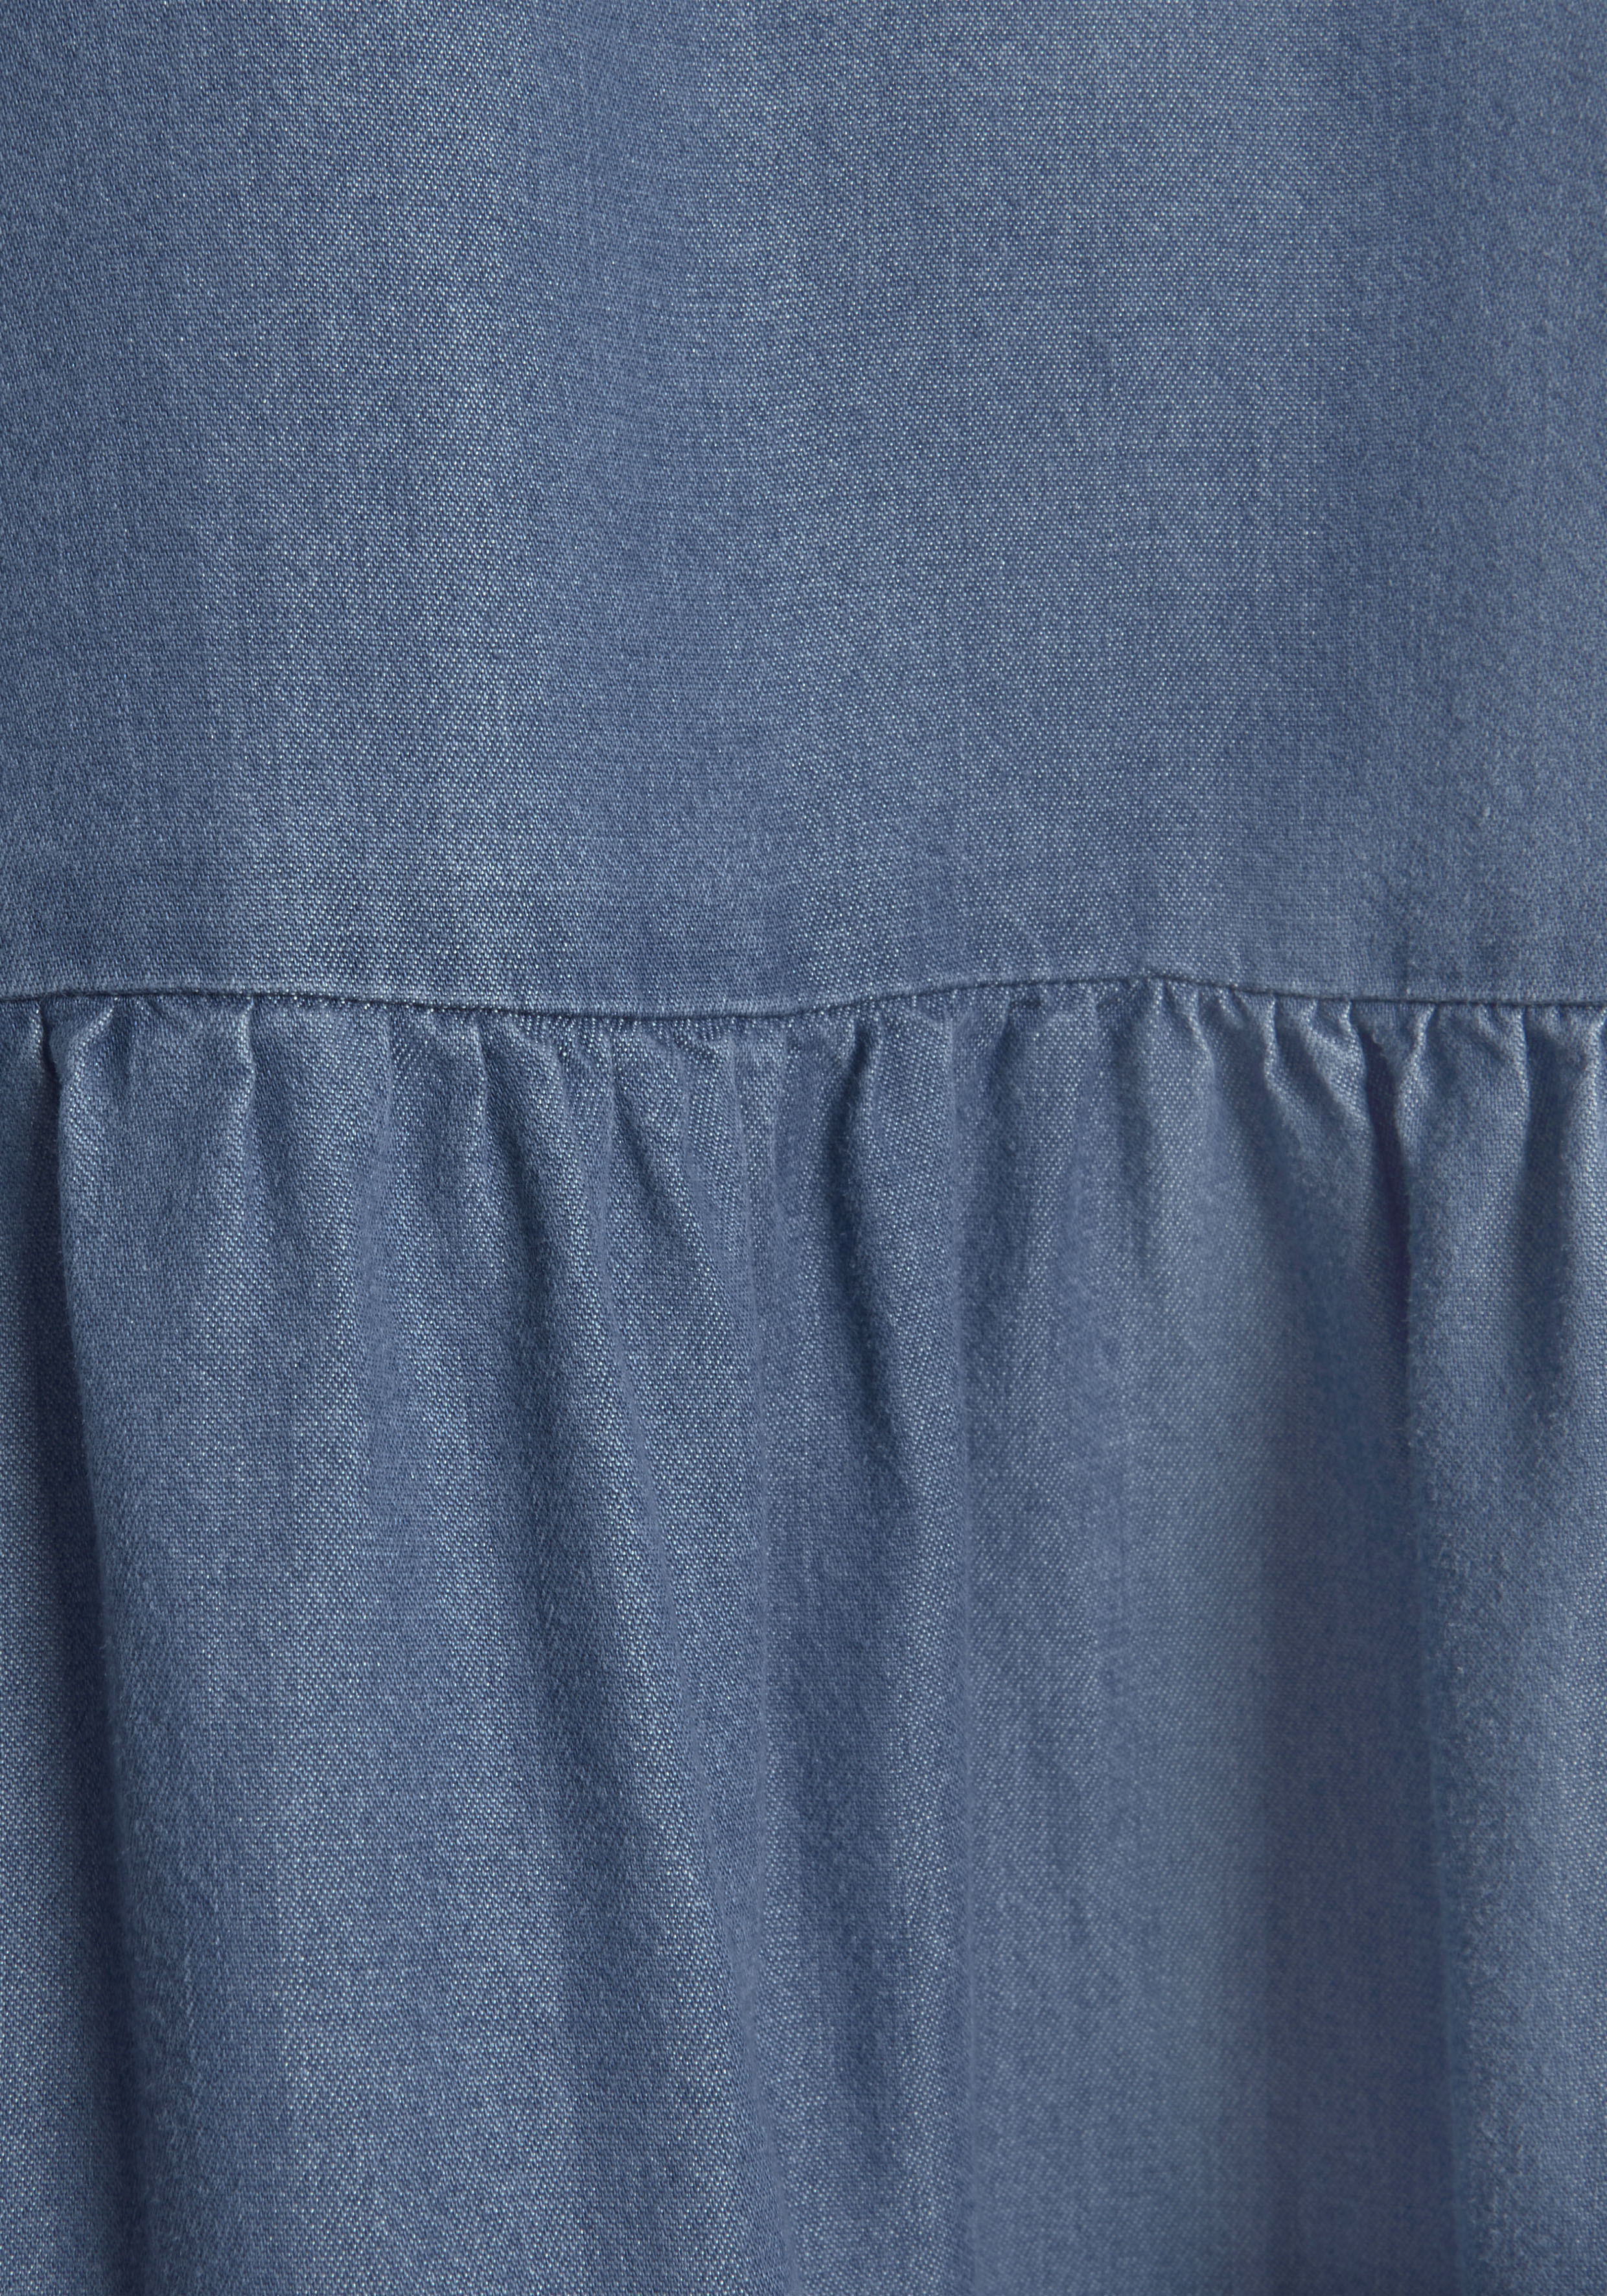 LASCANA Jeanskleid, mit Rüsche am Kragen » LASCANA | Bademode, Unterwäsche  & Lingerie online kaufen